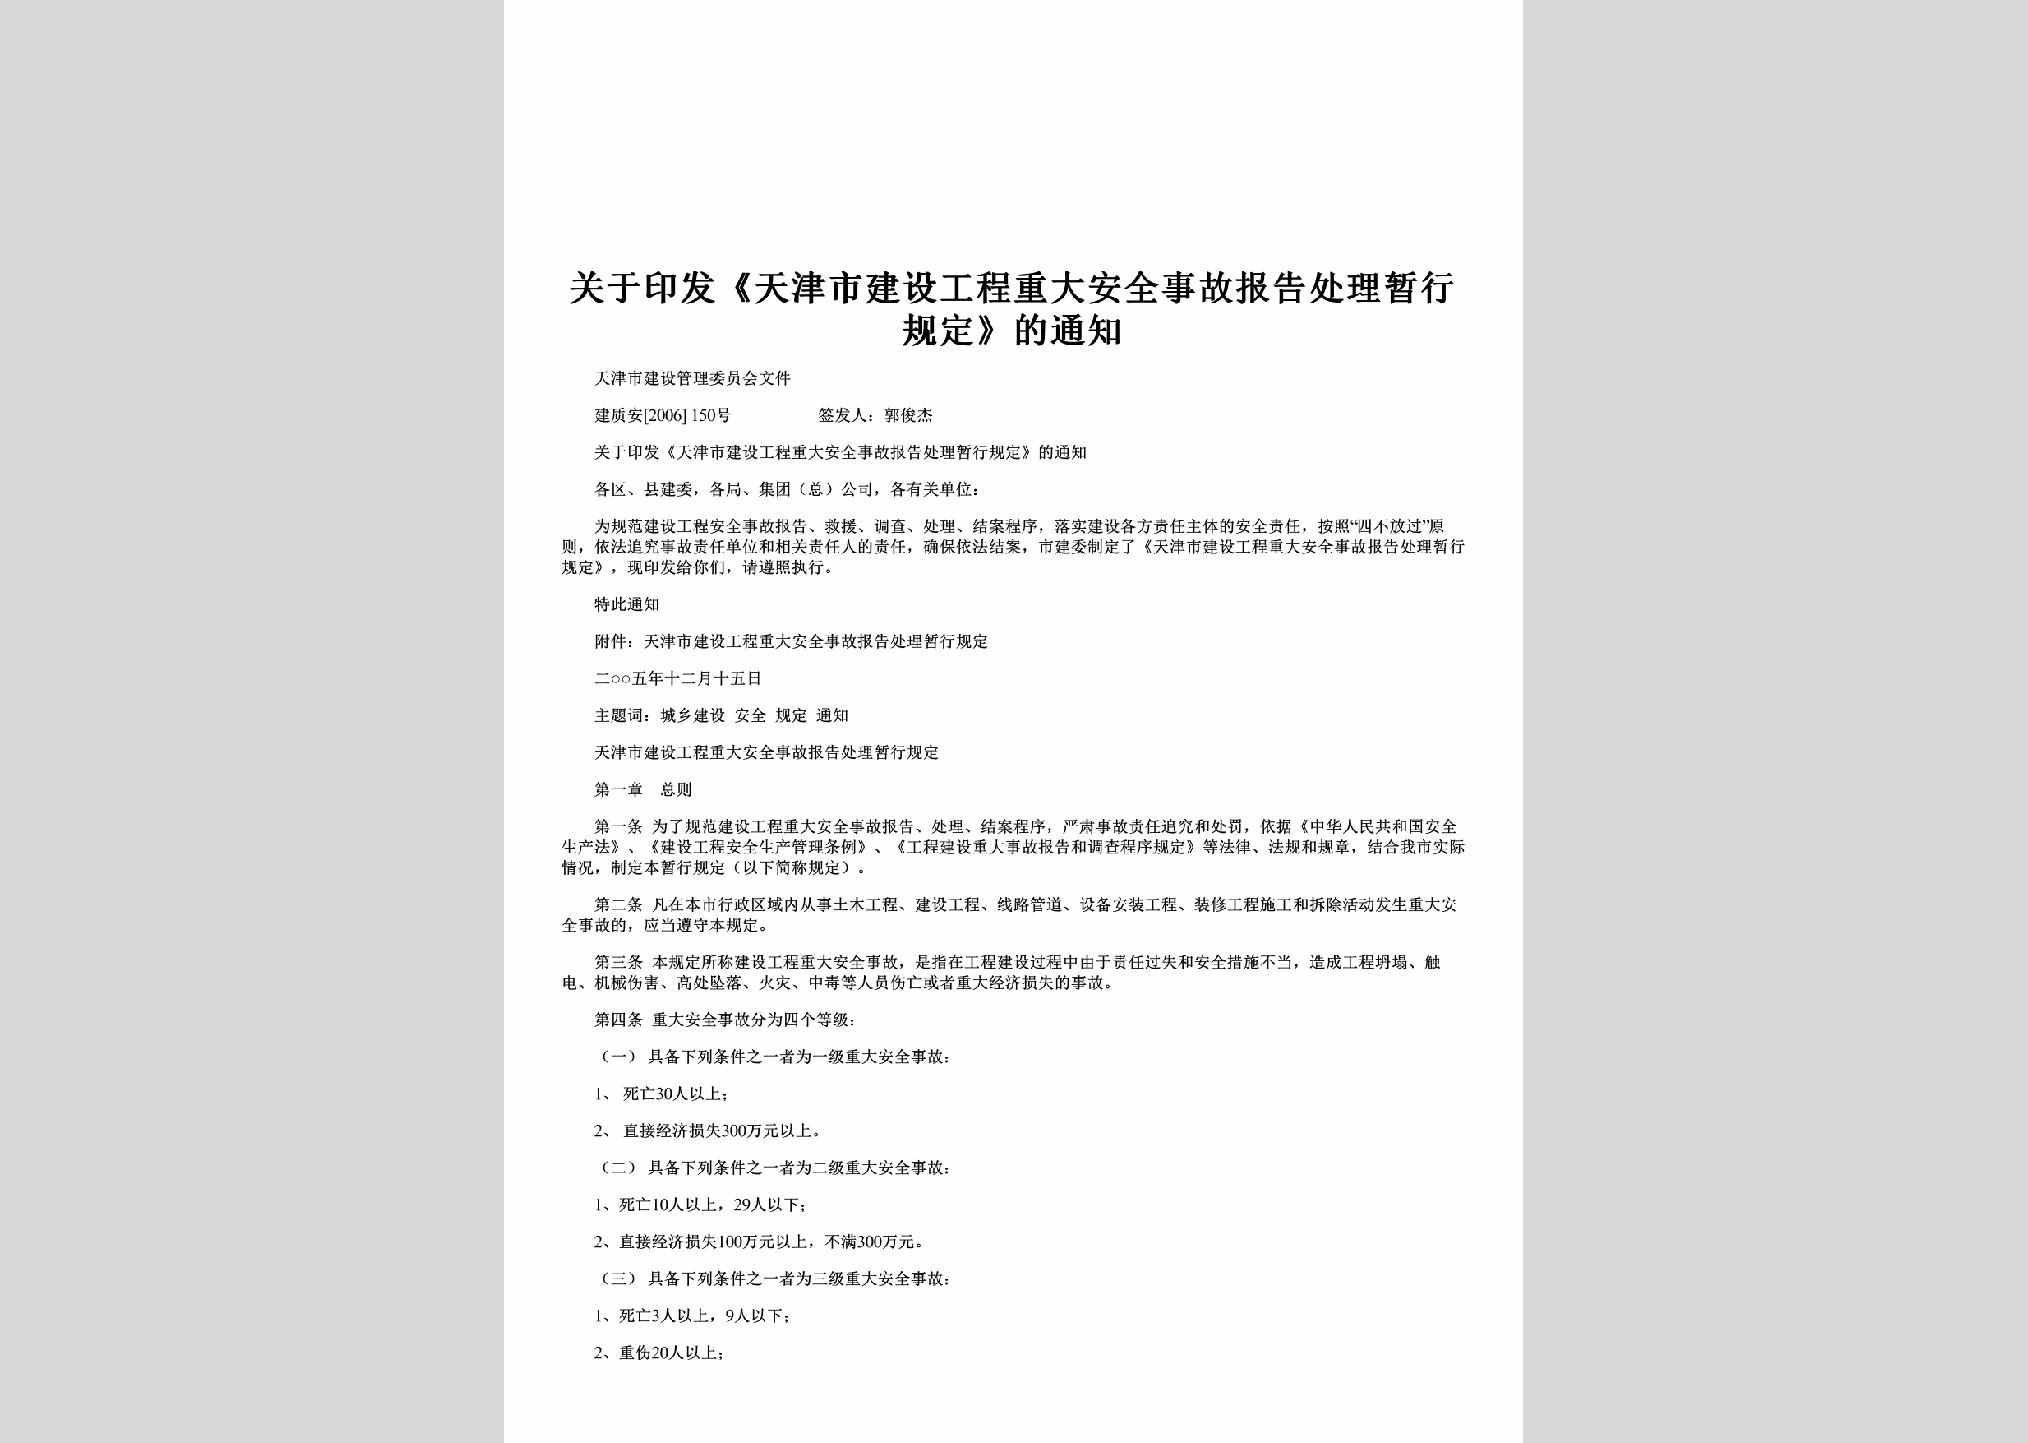 建质安[2006]150号：关于印发《天津市建设工程重大安全事故报告处理暂行规定》的通知